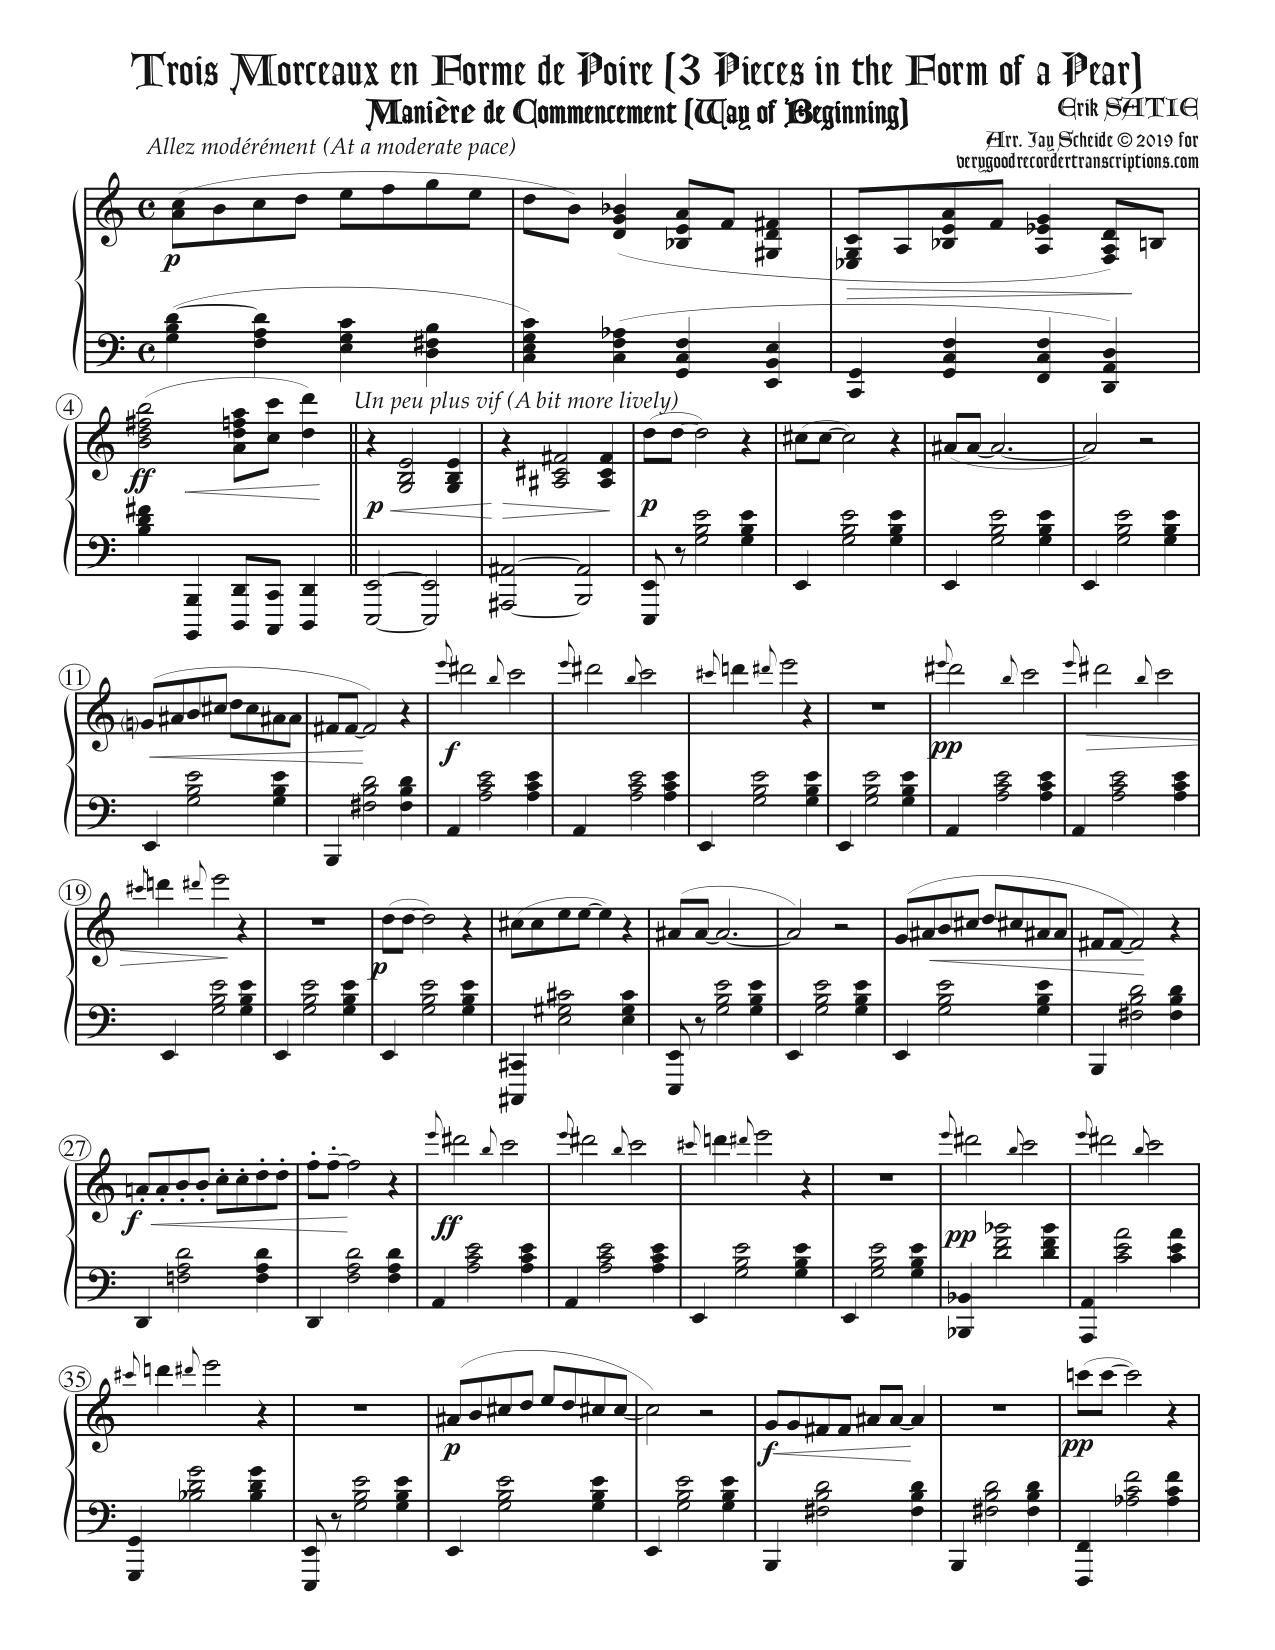 “Gnossienne No. 7”, the opening of *Trois morceaux en forme de poire*, arr. for piano two-hands